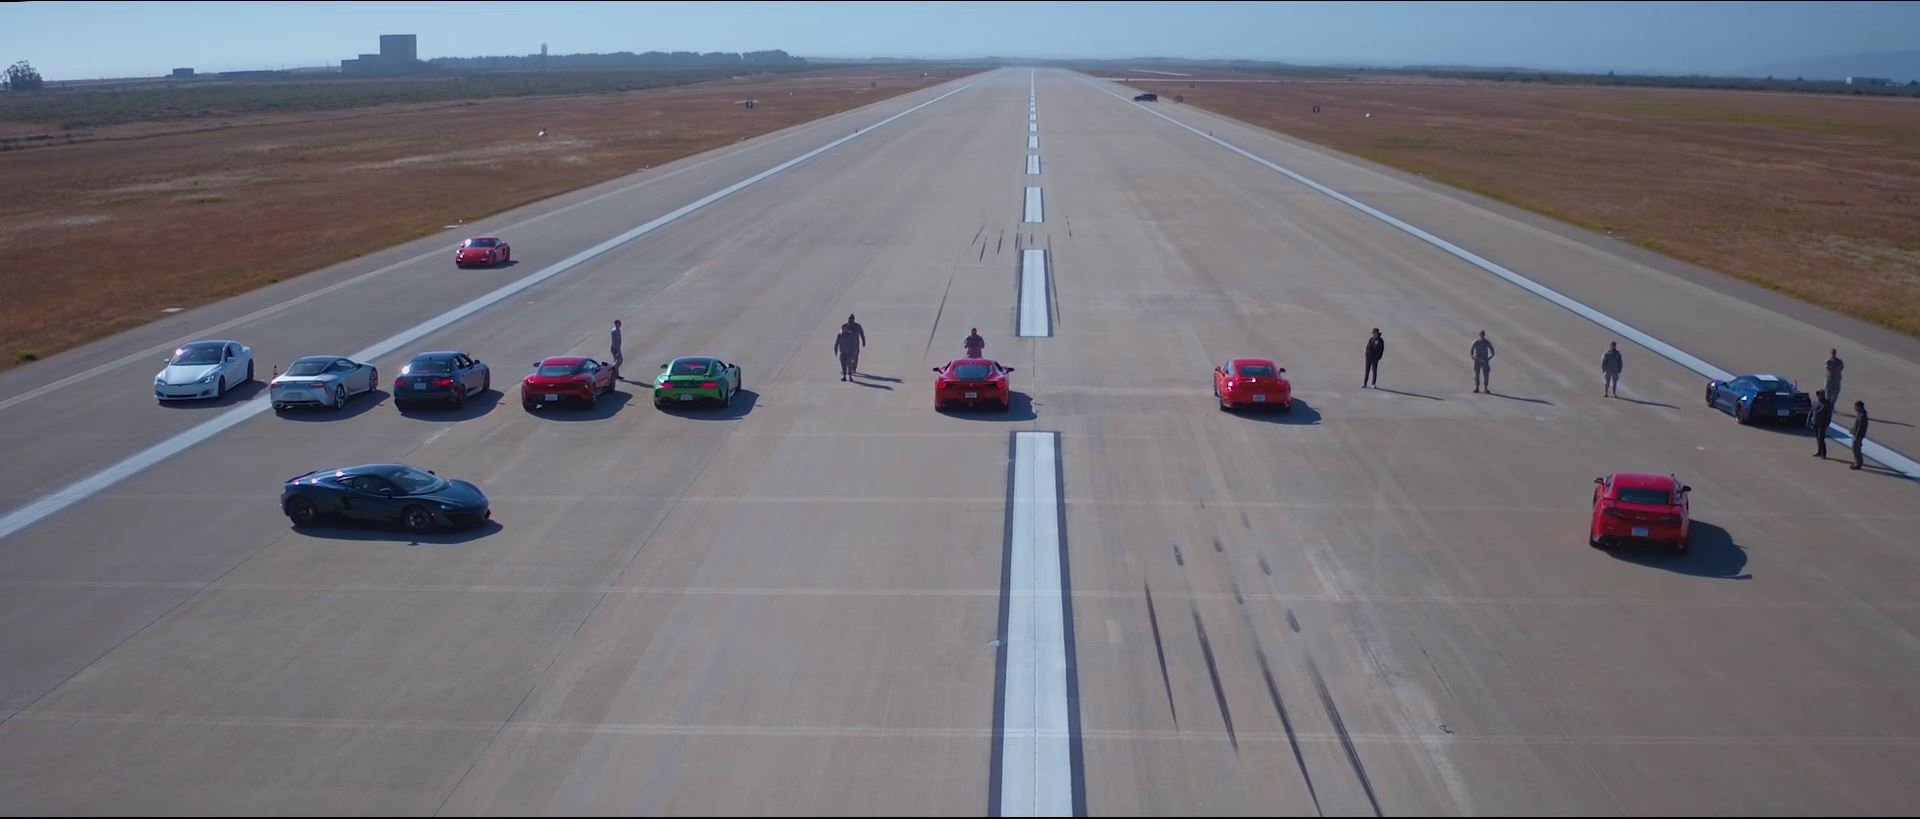 Záběry ze závodu "World's Greatest Drag Race 7", který uspořádal Motor Trend